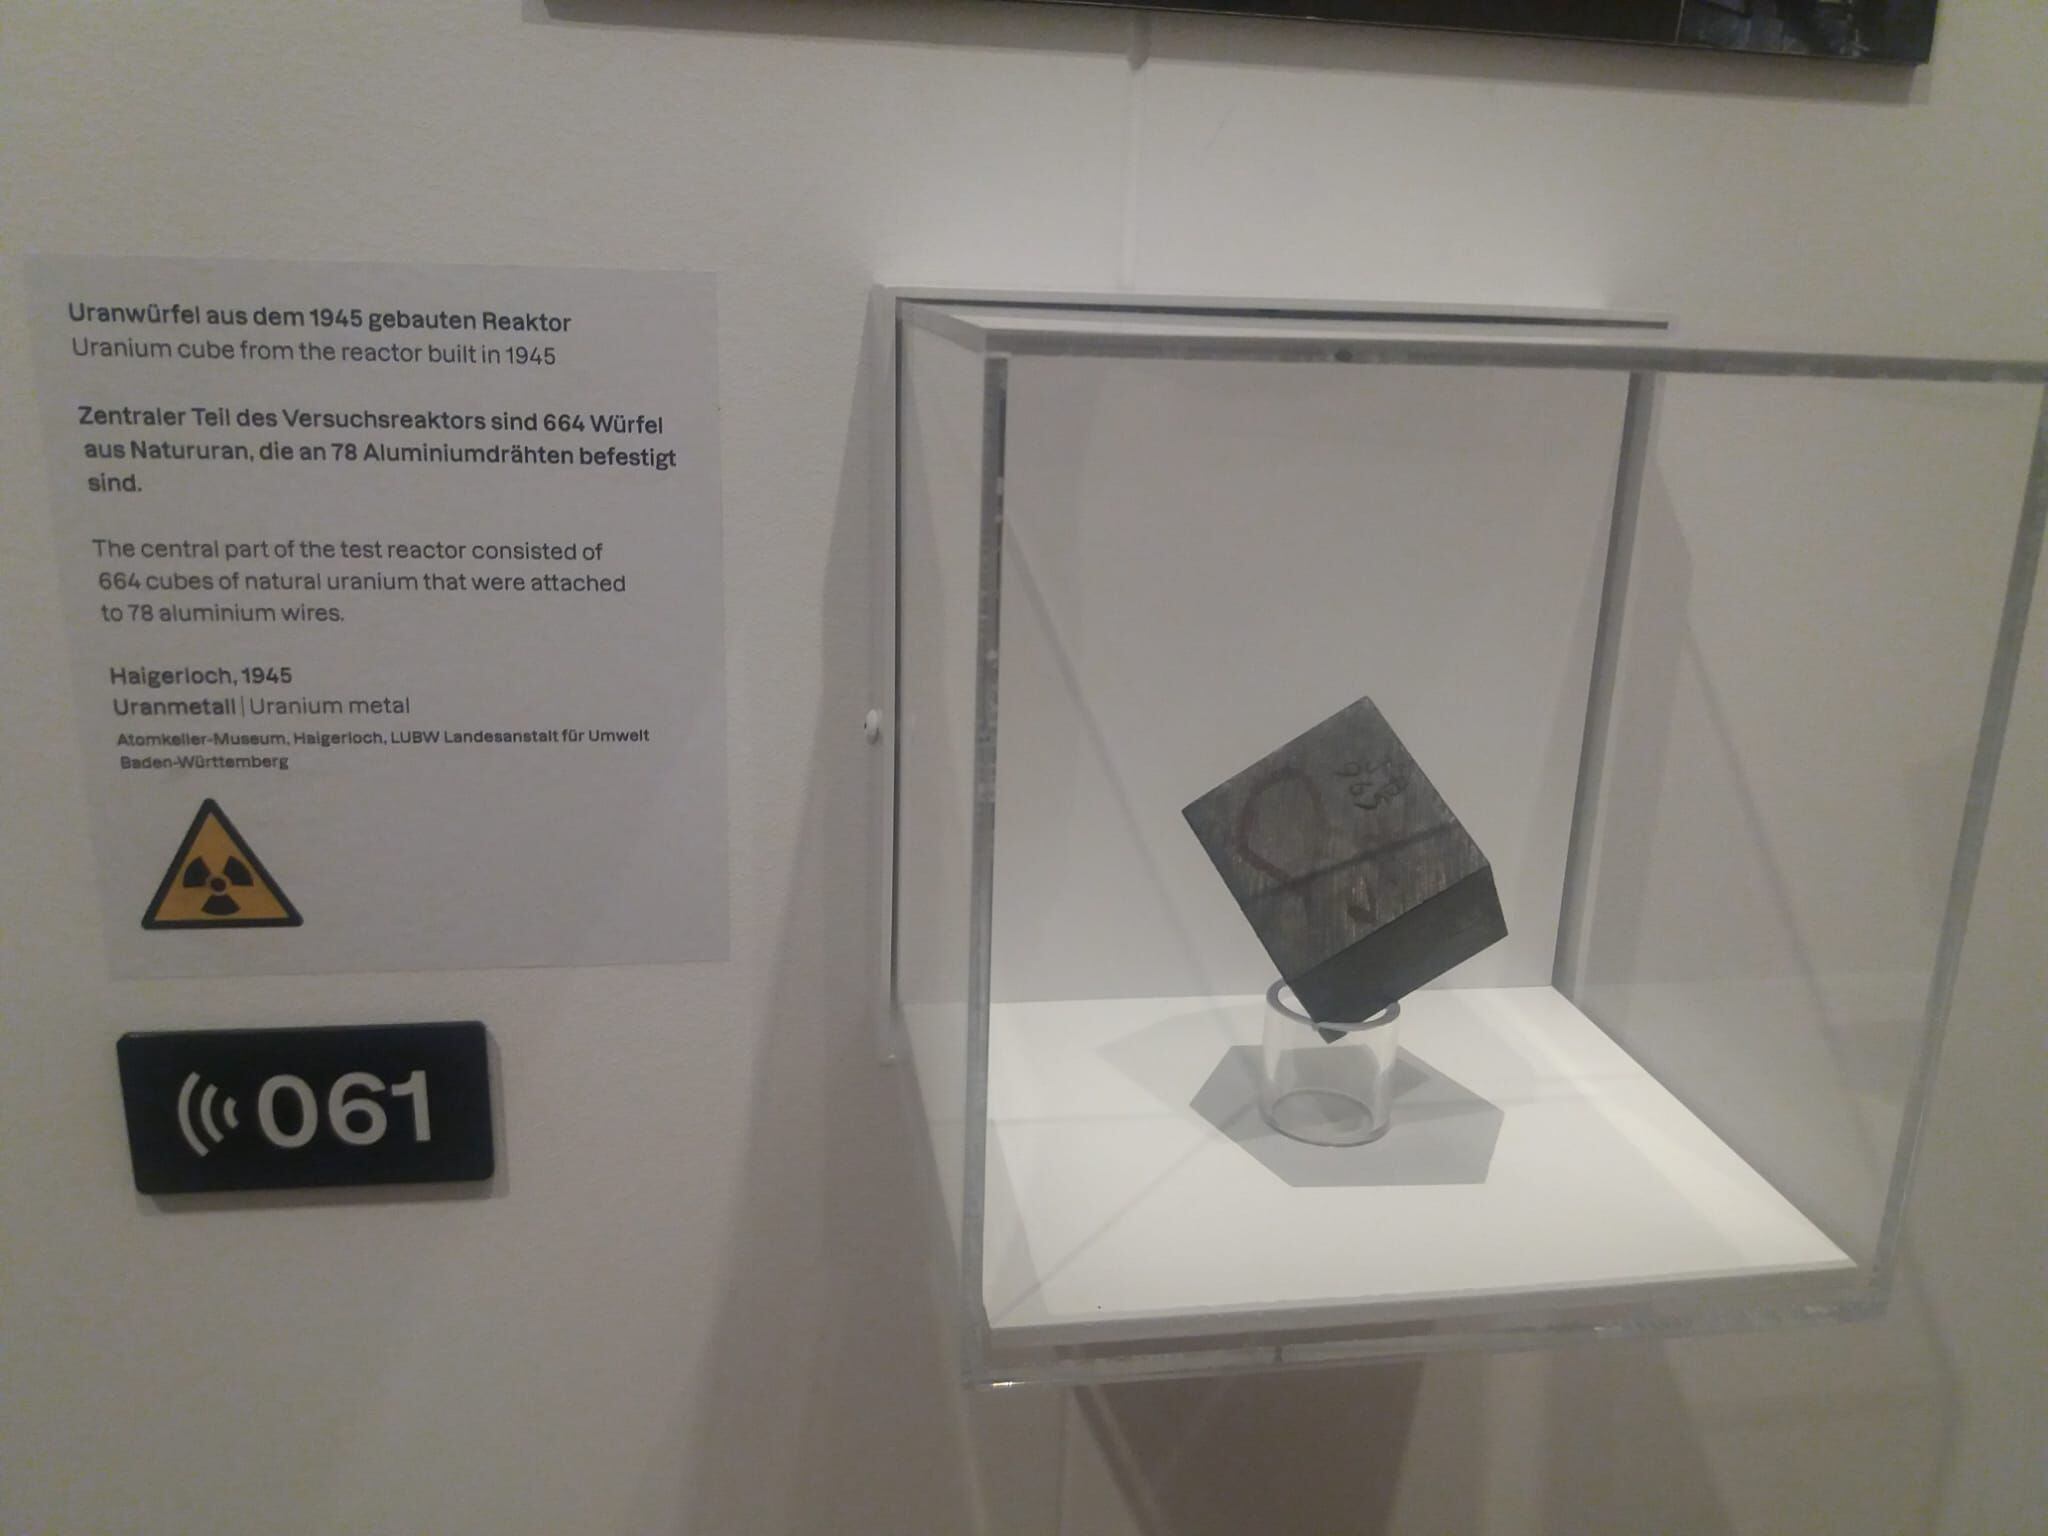 Un cubo de uranio de los experimentos nucleares alemanes durante la Segunda Guerra Mundial, en la exposición del Museo de Historia Alemana en Berlín.